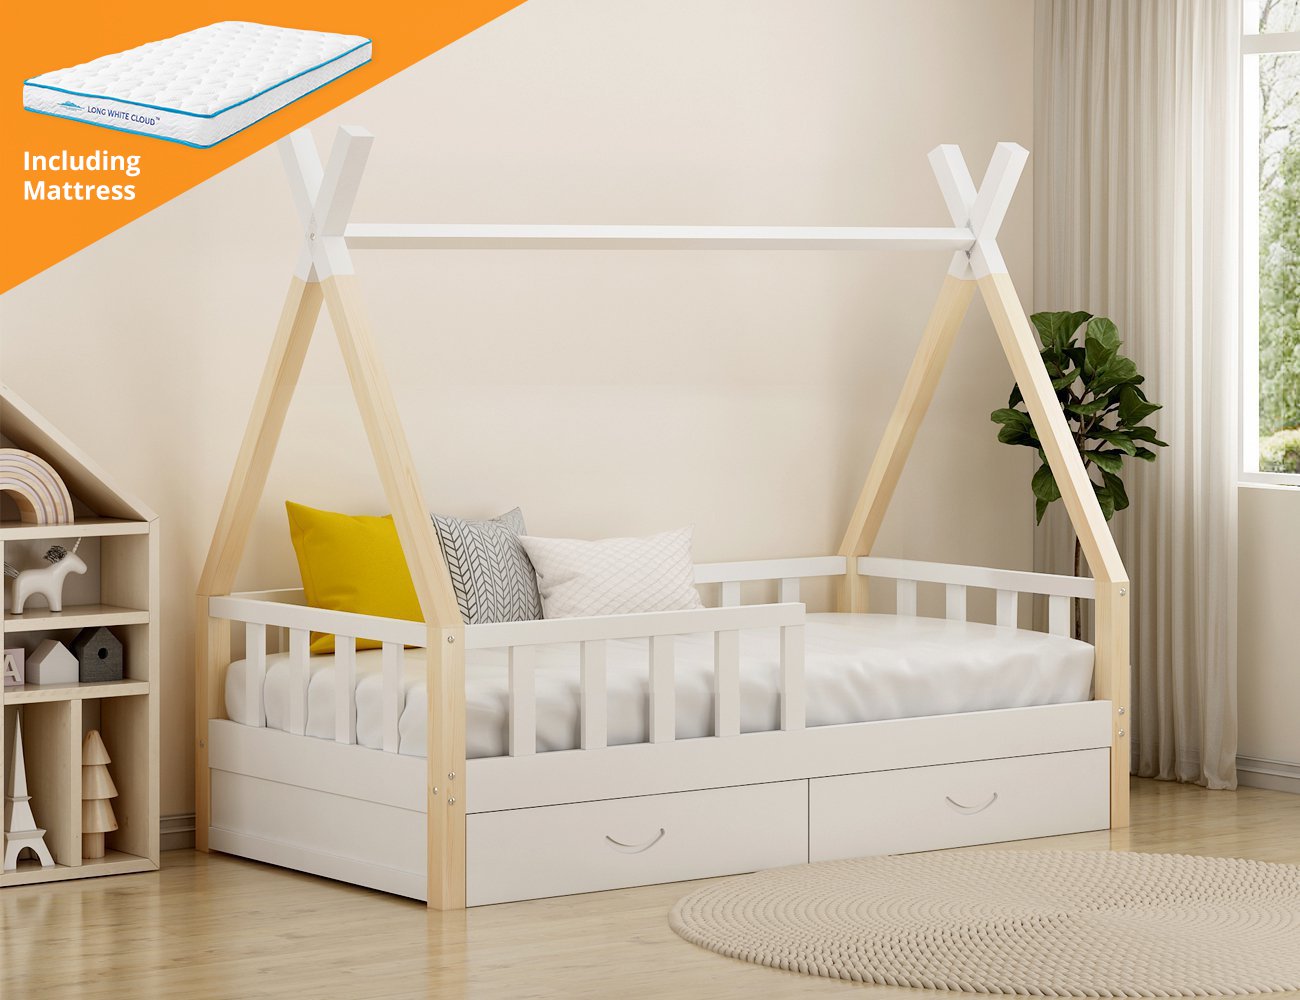 Sora Kids Single Bed Frame + Mattress Set @ Crazy Sales - We have the